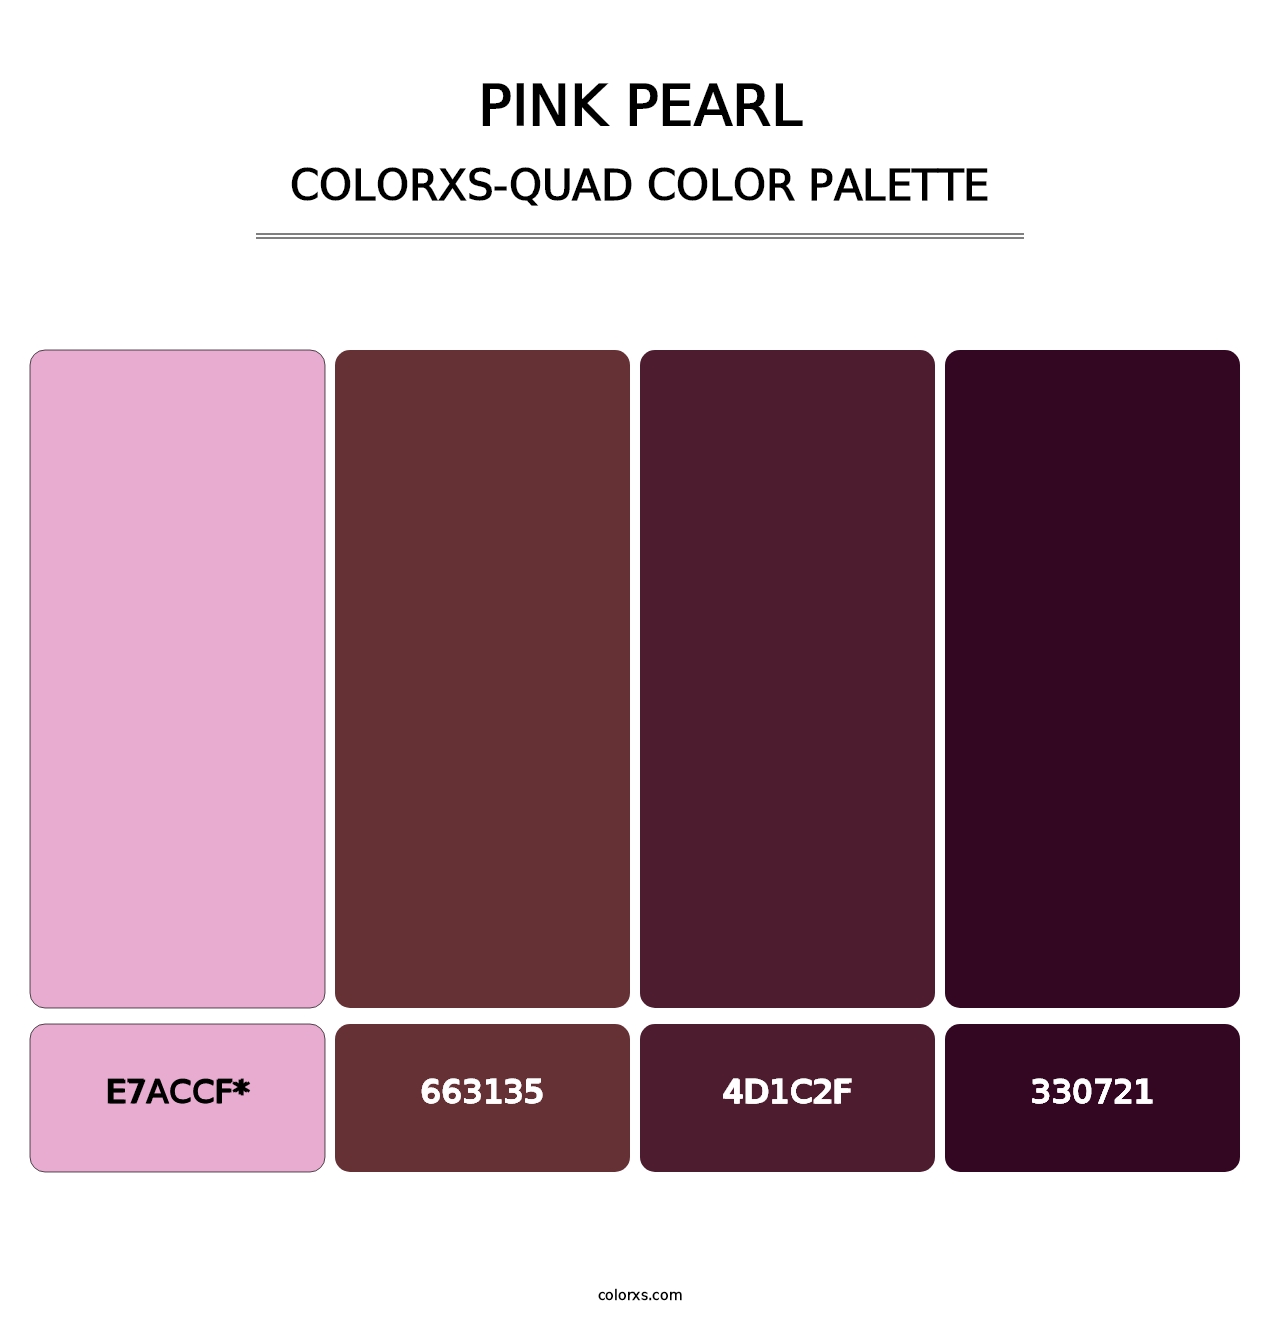 Pink Pearl - Colorxs Quad Palette